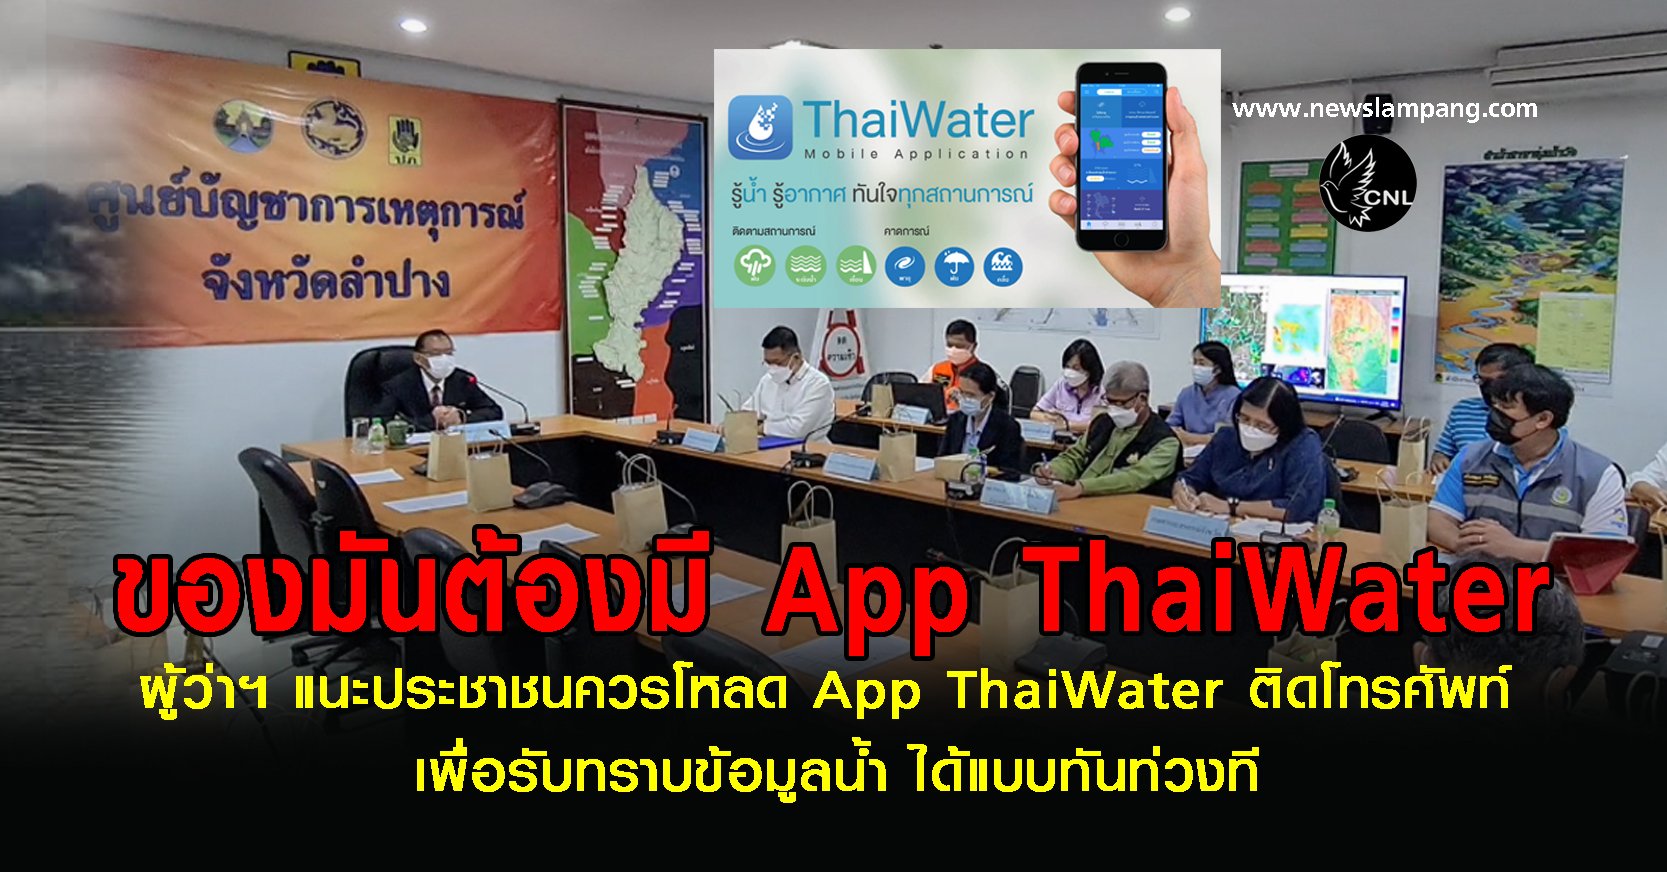 ผู้ว่าแนะประชาชนควรโหลด App ThaiWater ติดโทรศัพท์-เพื่อรับรู้สถานการณ์น้ำได้ทันท่วงที-พร้อมแนะให้หน่วยงานต่อยอดถึงขั้นแจ้งเตือนสถานการณ์ให้ประชาชนรับทราบก่อนเกิดเหตุการณ์ได้ทันทีป้องกันความสูญเสีย